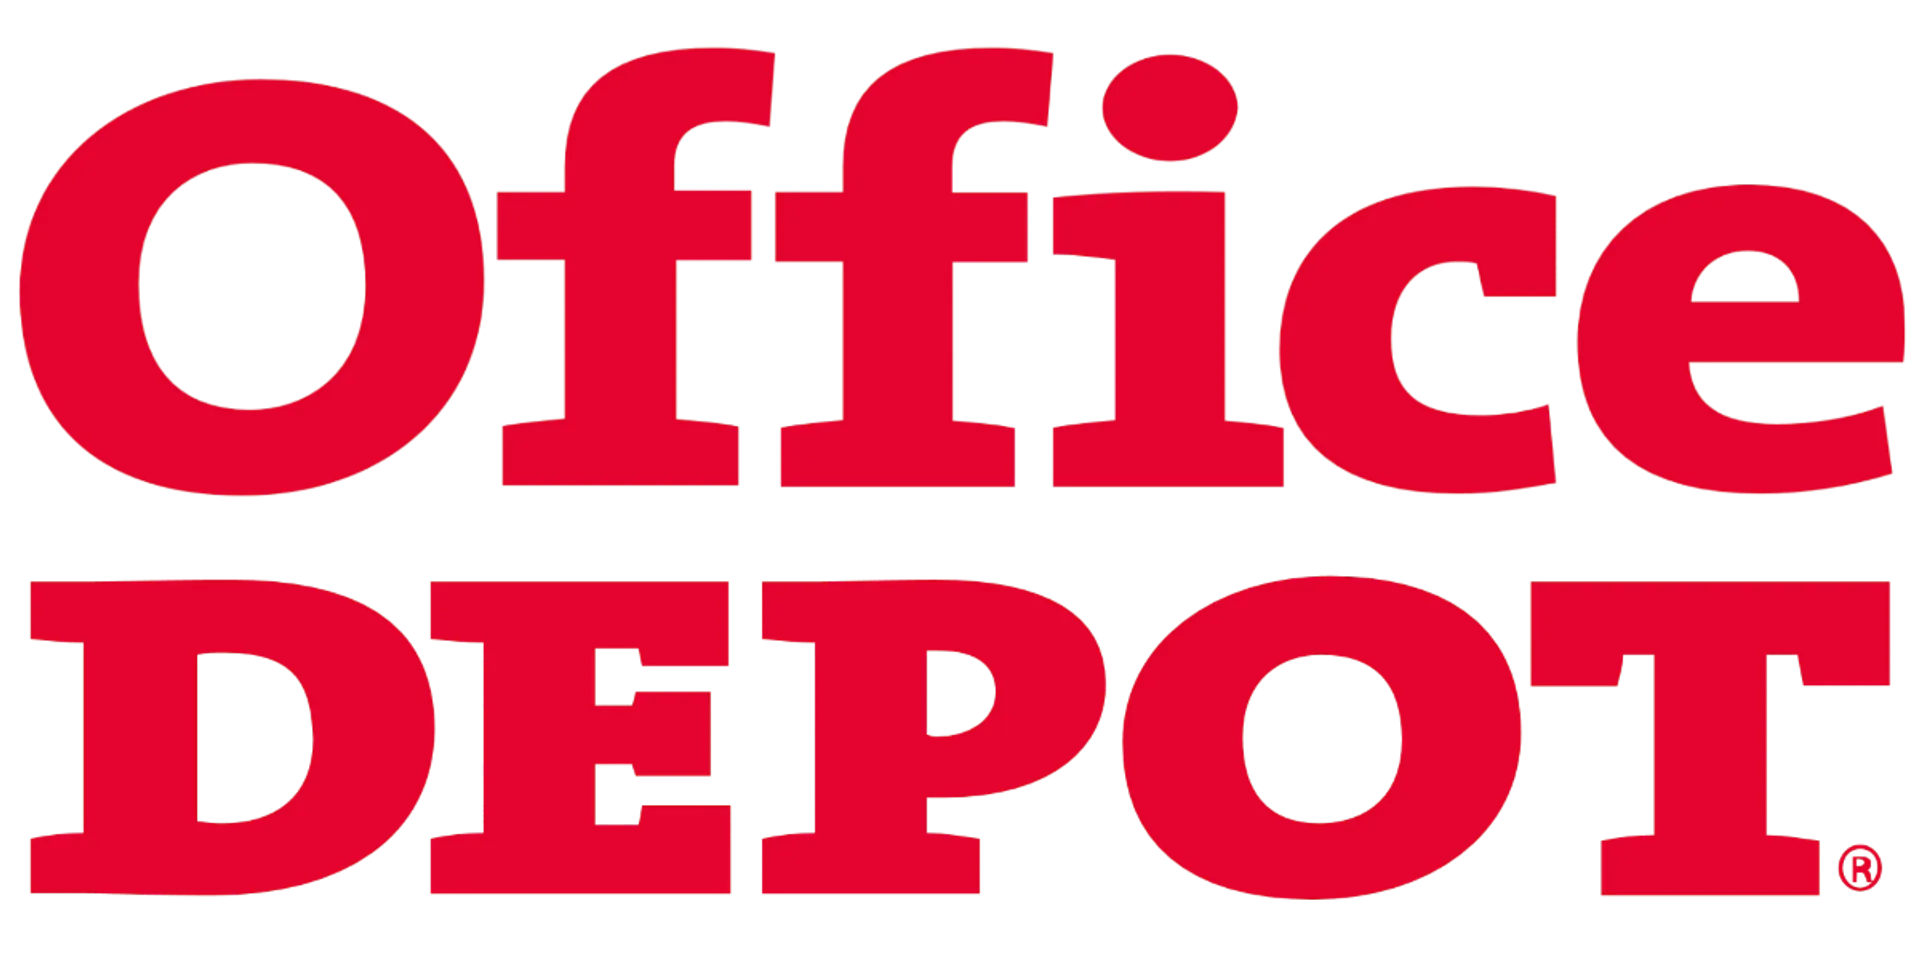 OFFICE DEPOT logo